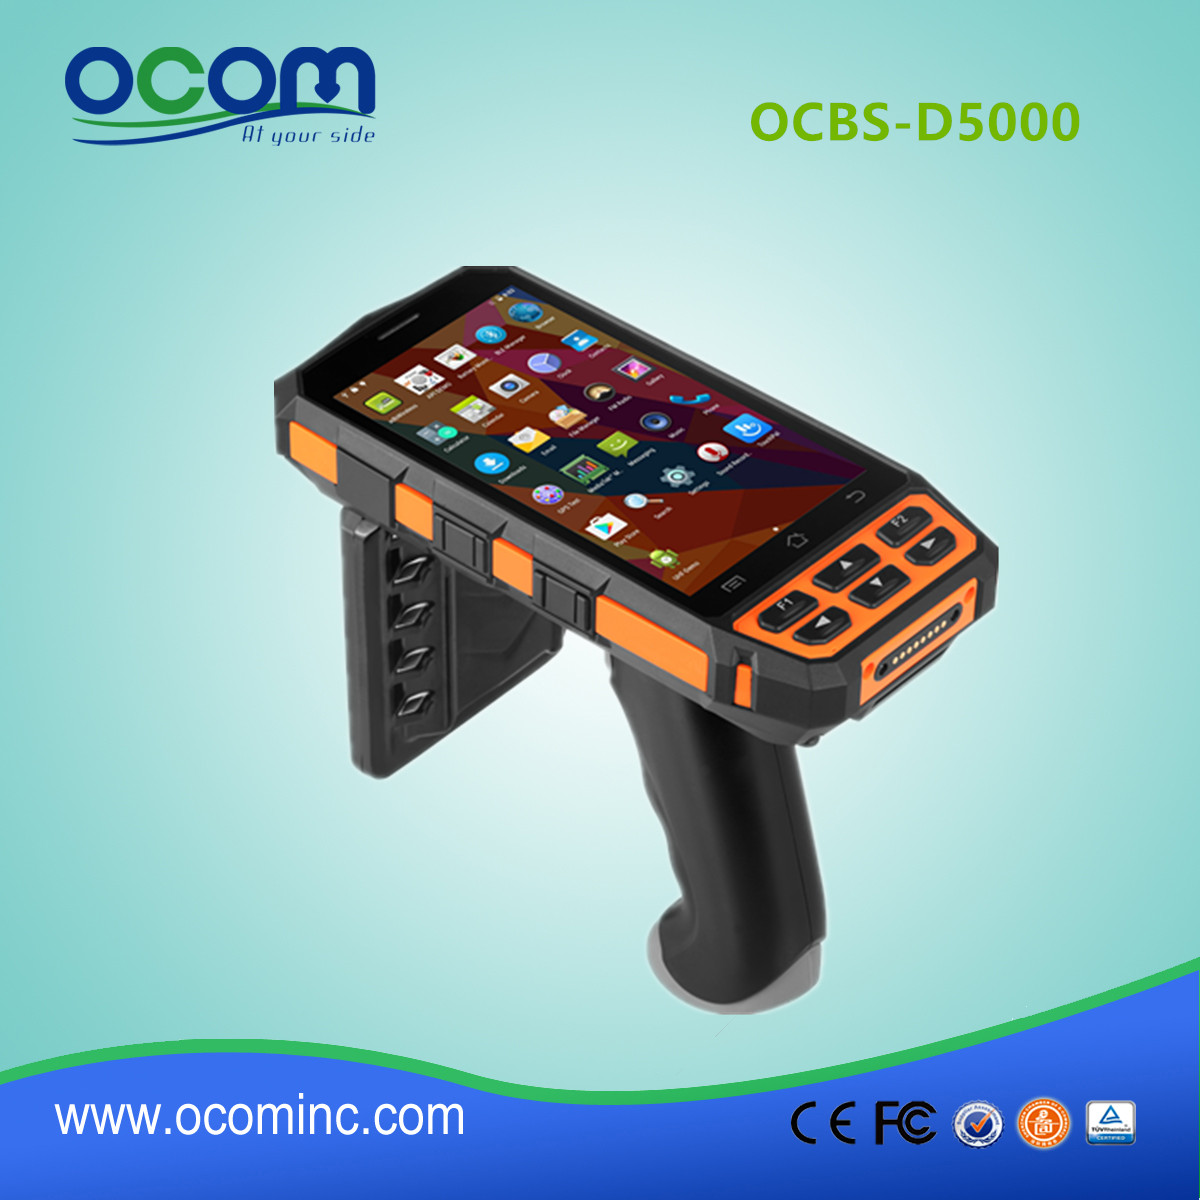 OCBS-D5000 安卓移动便携式手持数据采集终端